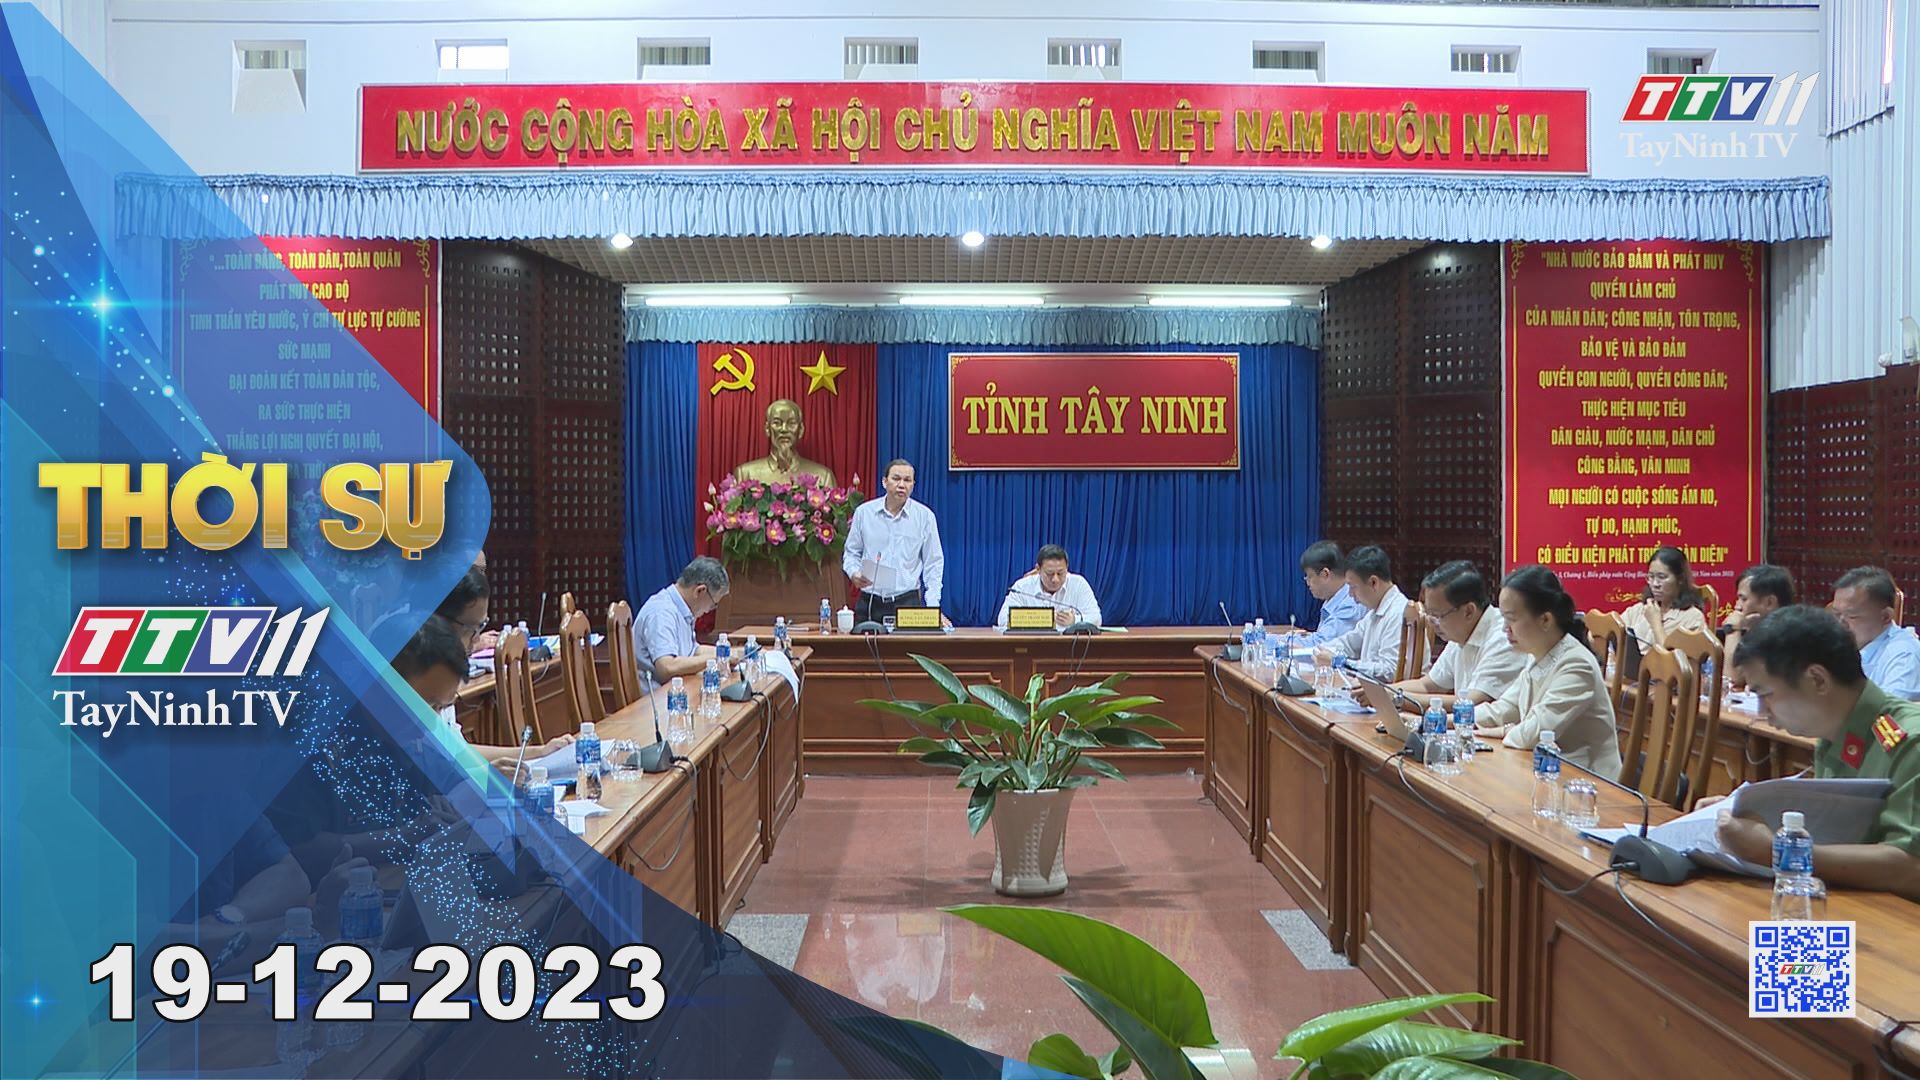 Thời sự Tây Ninh 19-12-2023 | Tin tức hôm nay | TayNinhTV